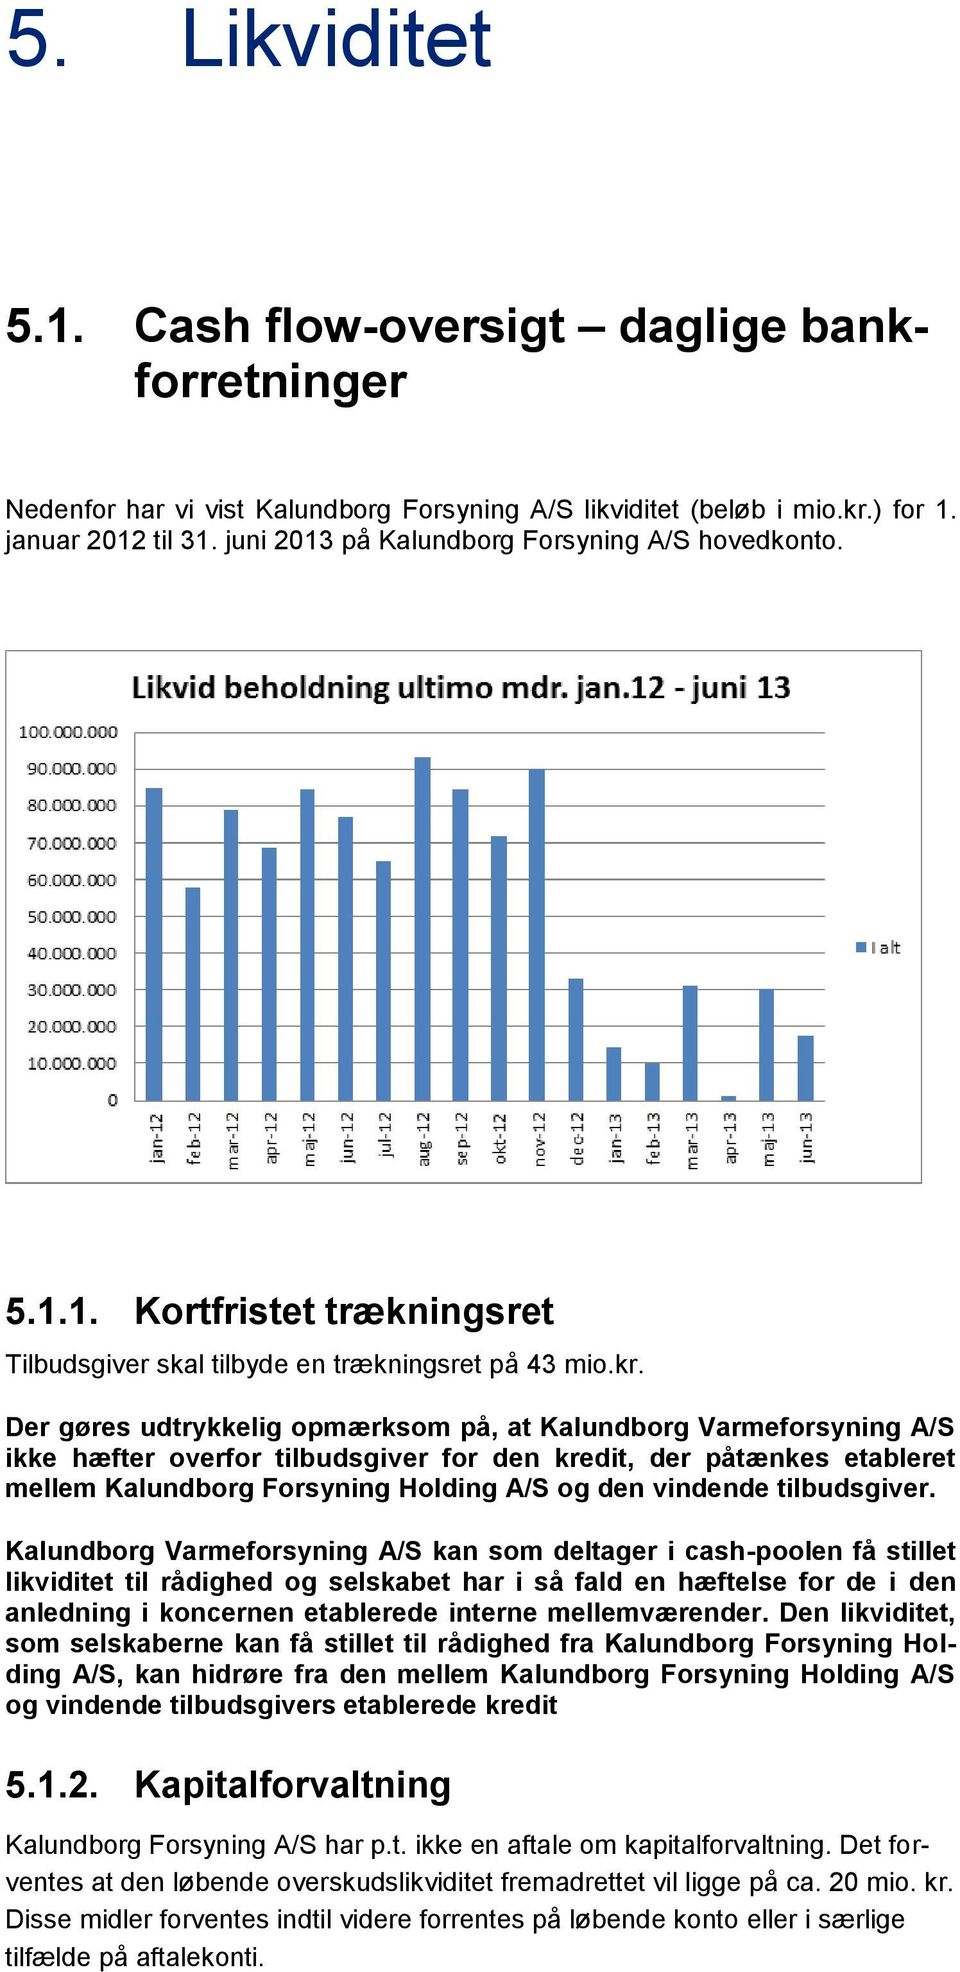 Der gøres udtrykkelig opmærksom på, at Kalundborg Varmeforsyning A/S ikke hæfter overfor tilbudsgiver for den kredit, der påtænkes etableret mellem Kalundborg Forsyning Holding A/S og den vindende